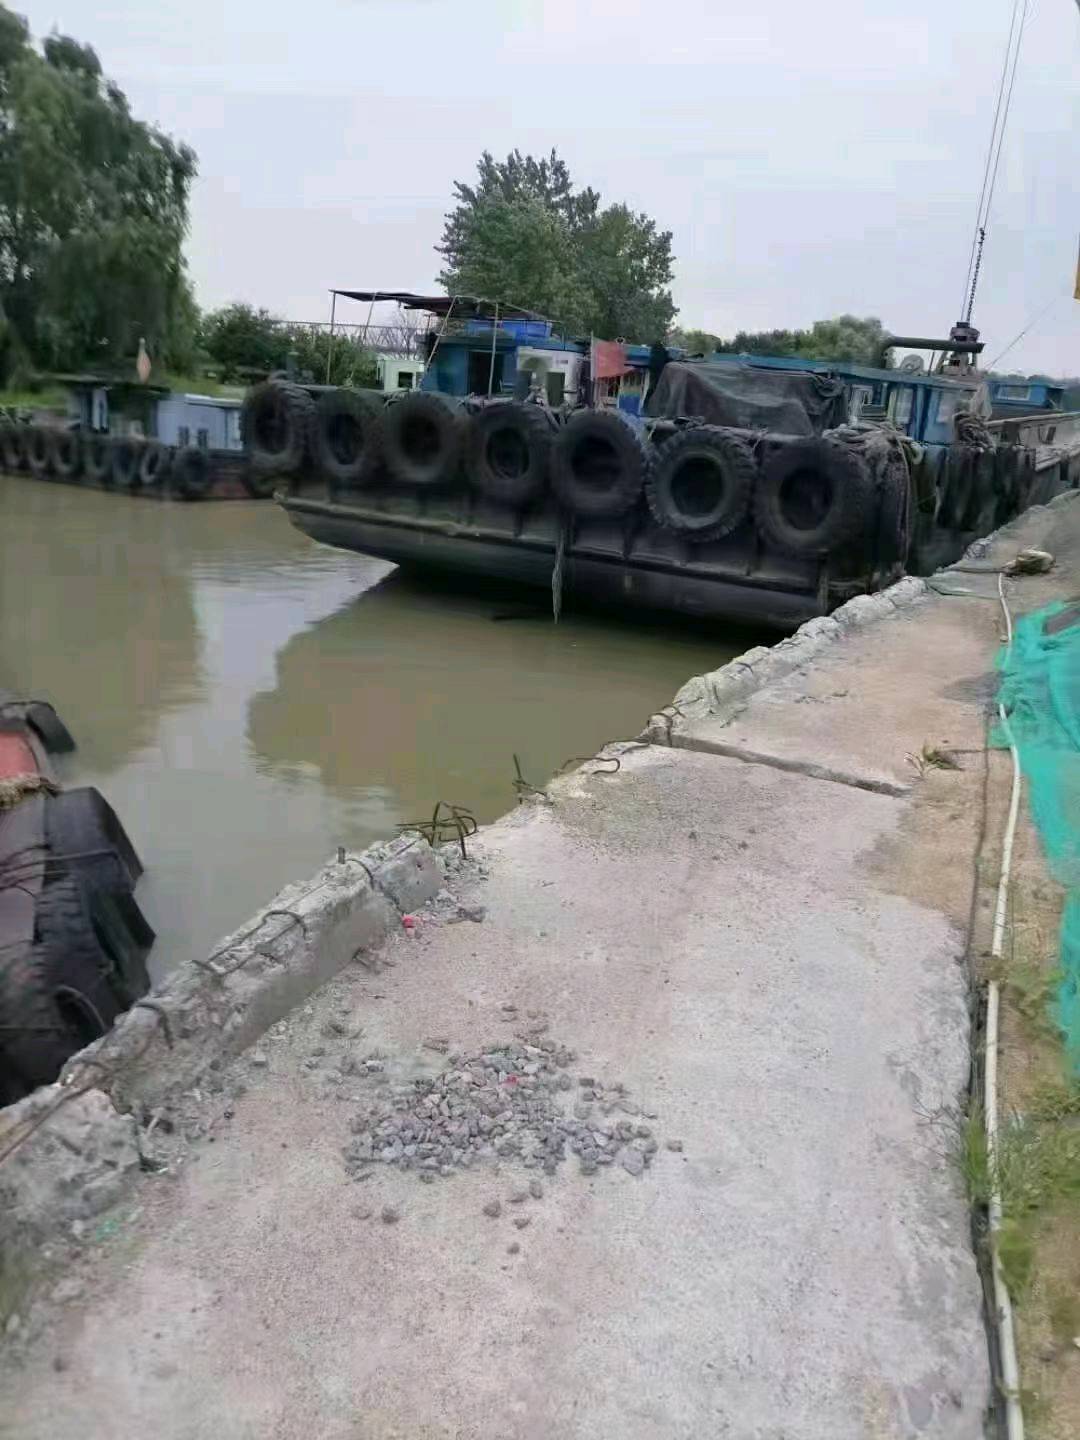 内河船